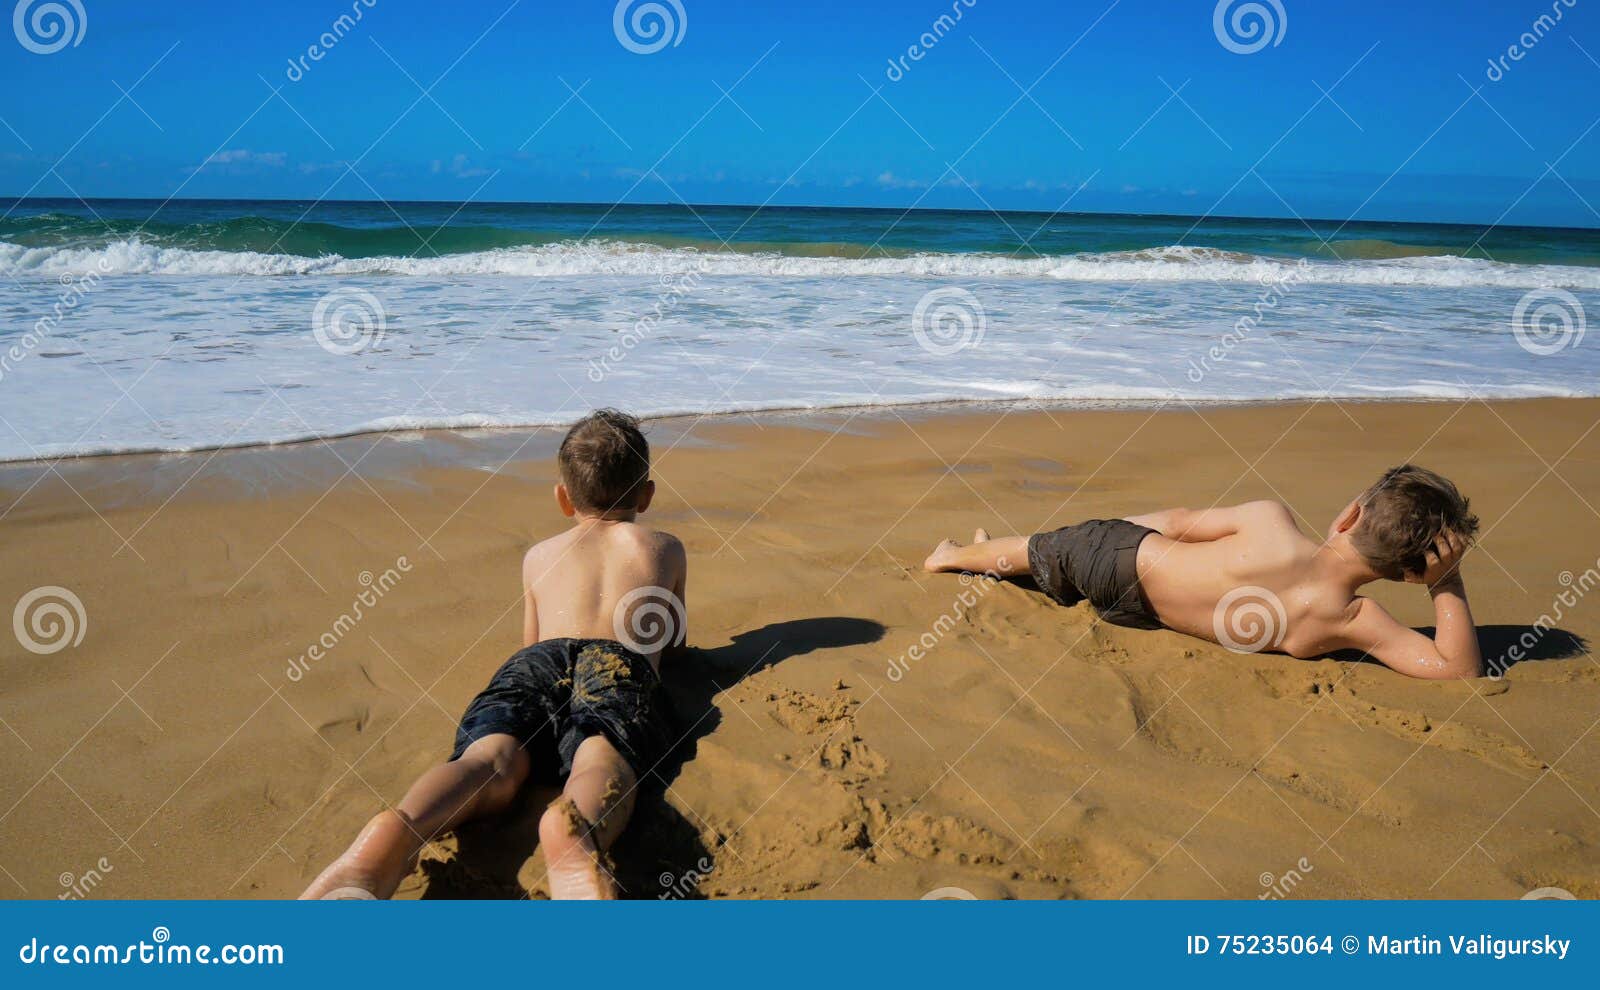 Naked beach boys